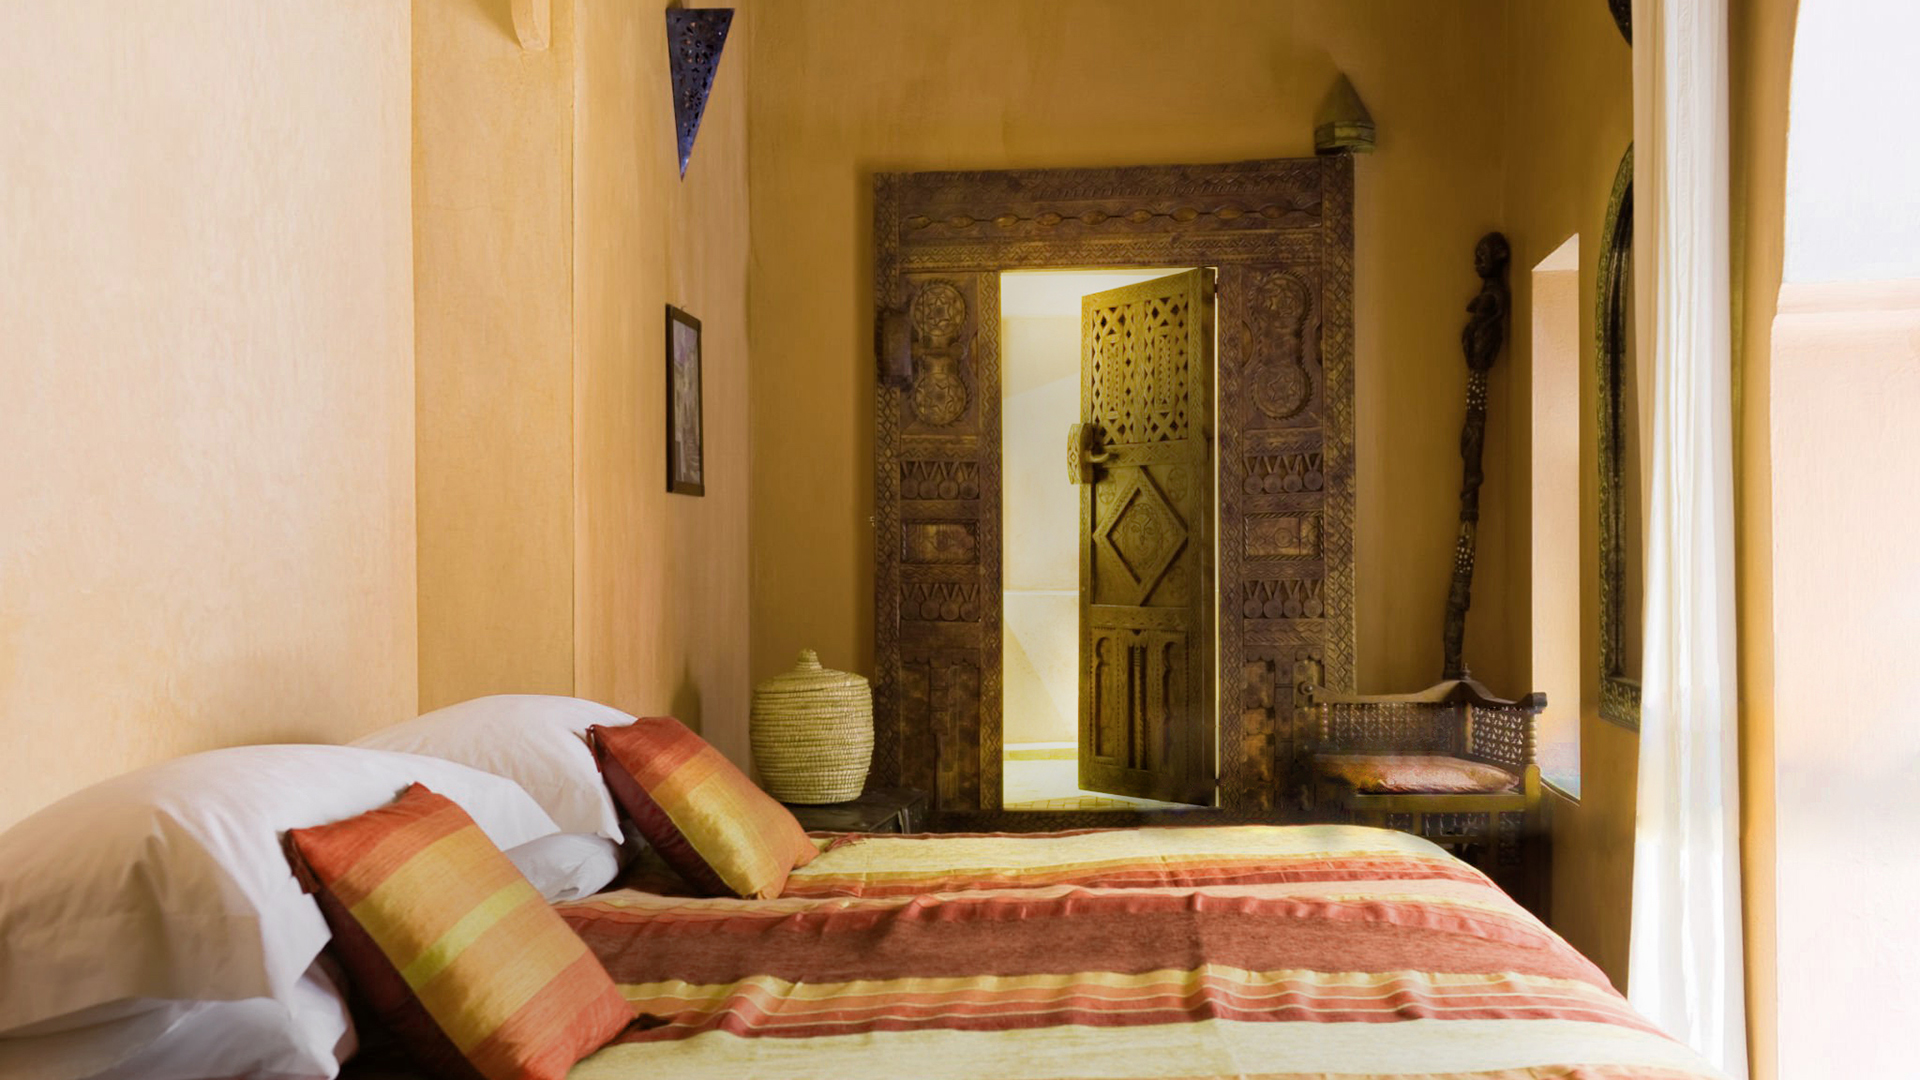 Arabische stijl slaapkamer met tadelakt op muren